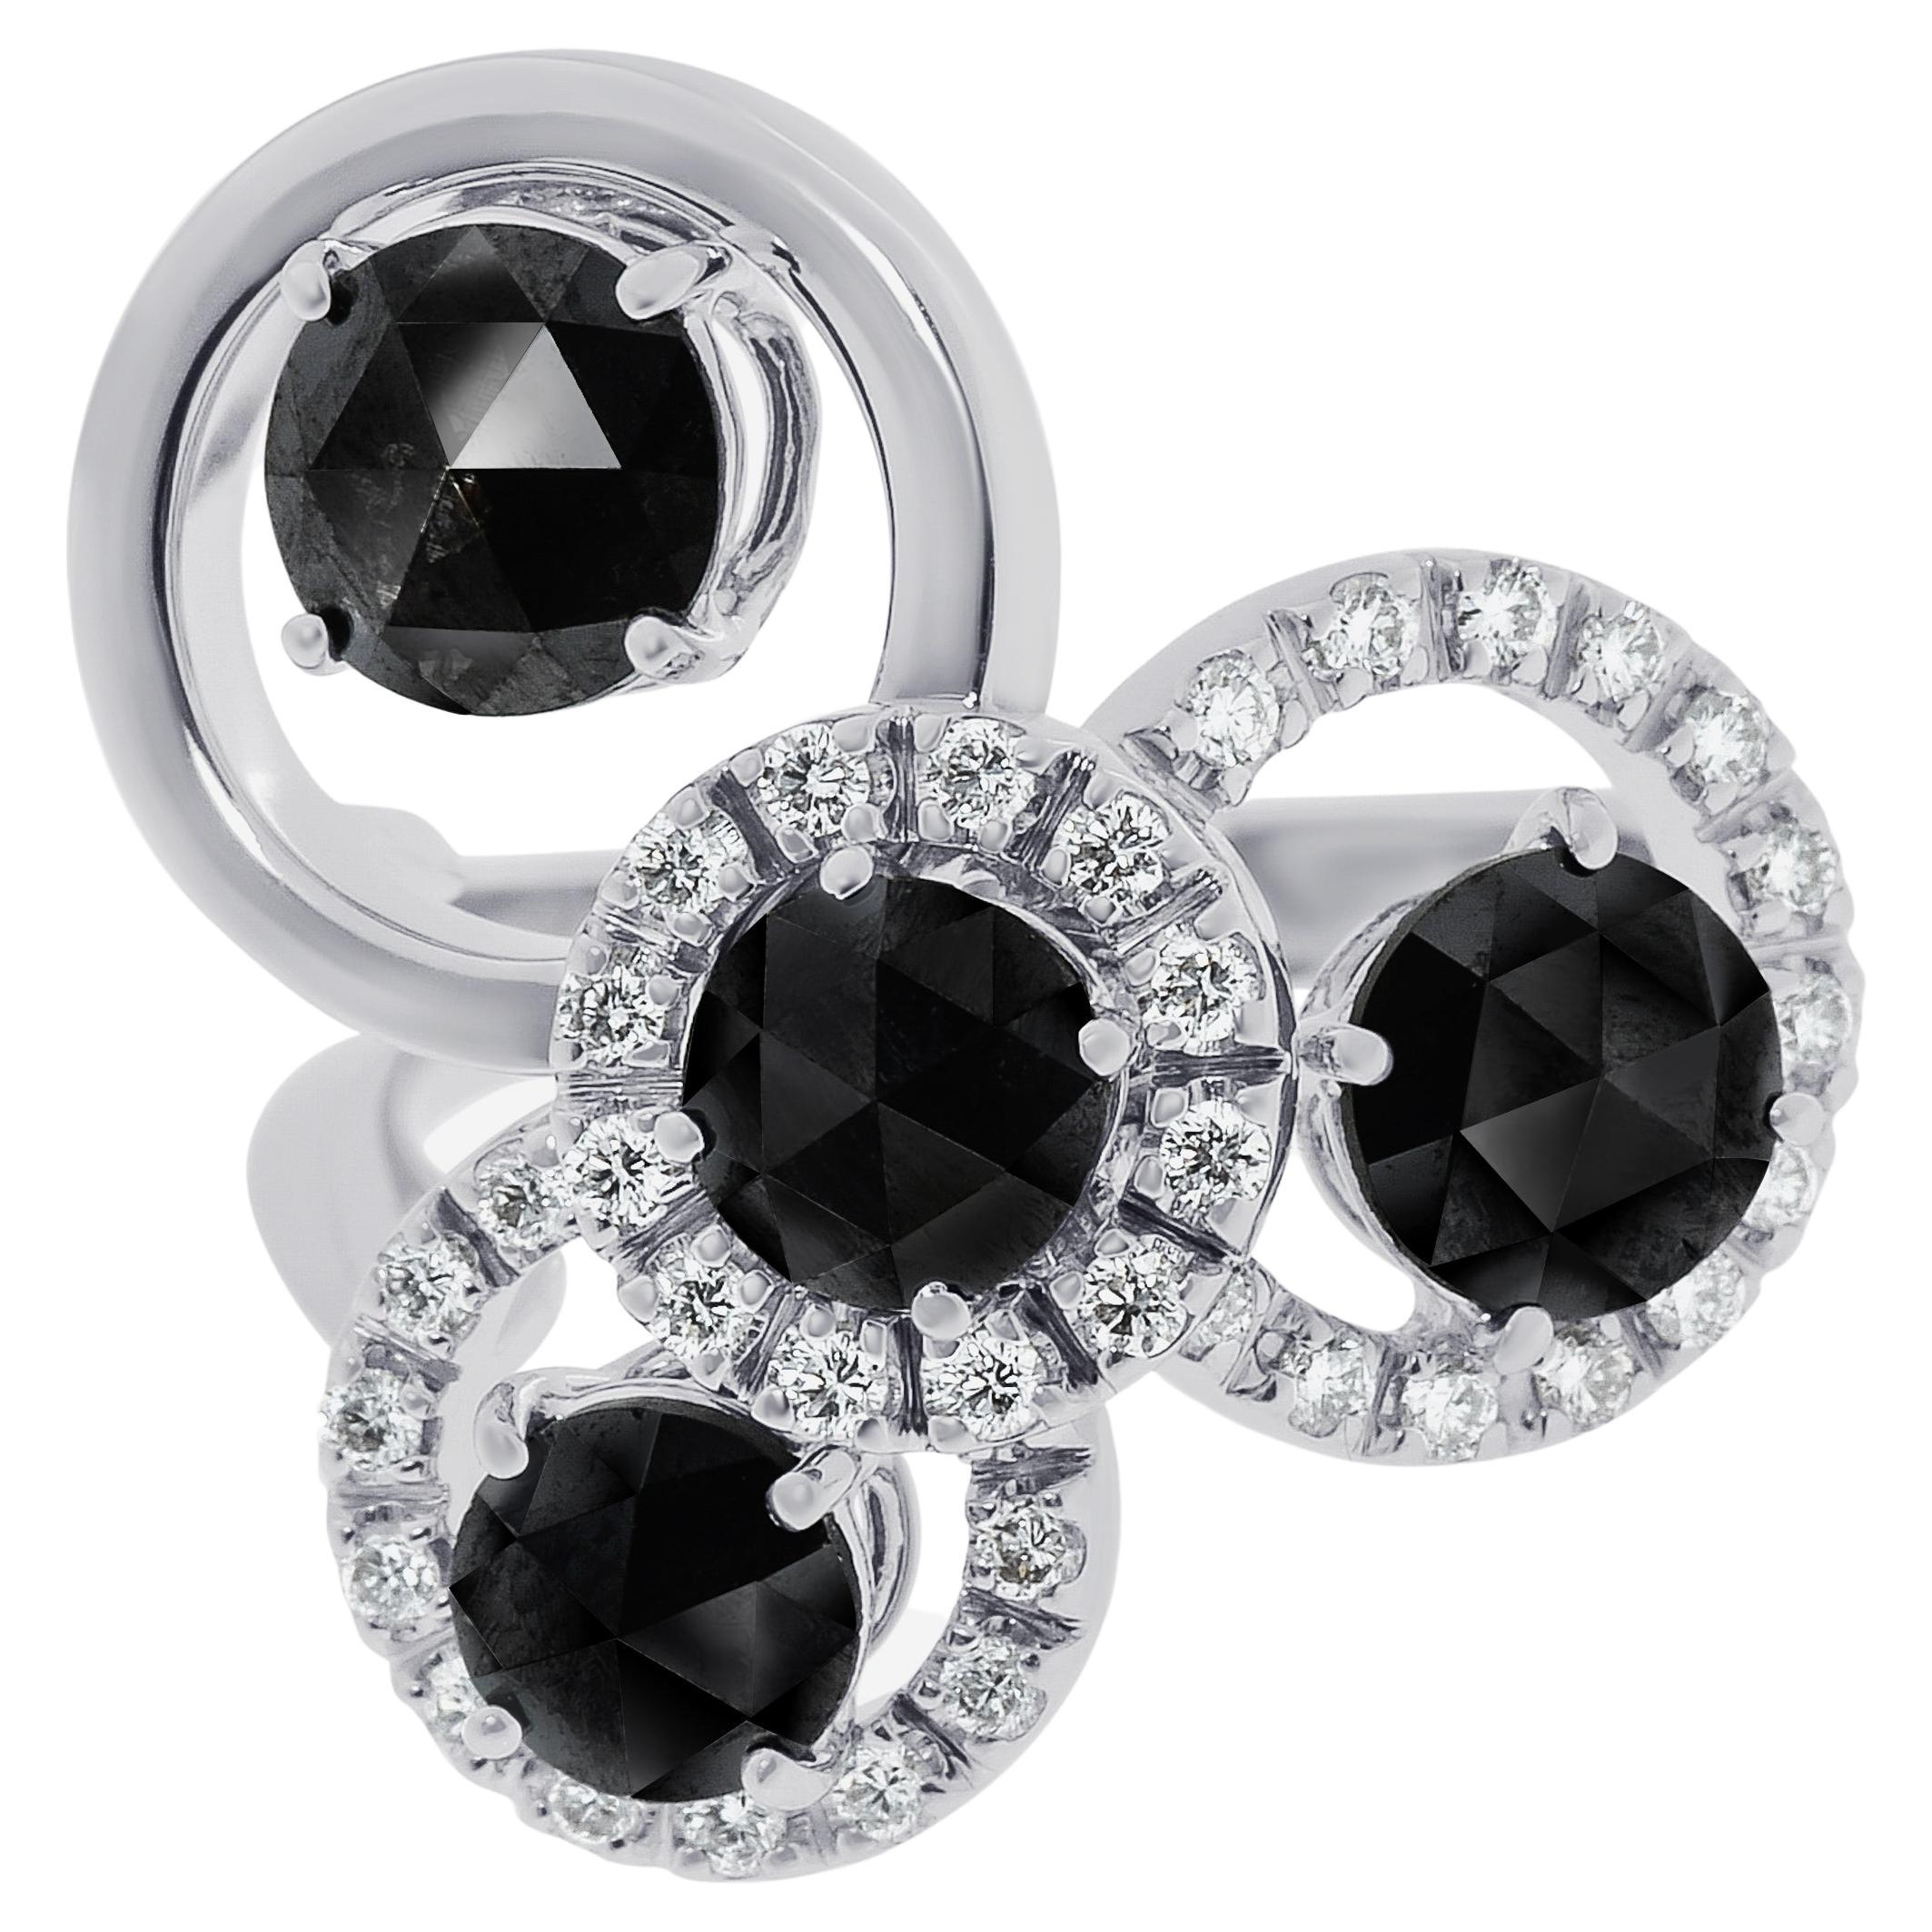 Zydo 18K White Gold Black & White Diamond Statement Ring sz. 7 For Sale